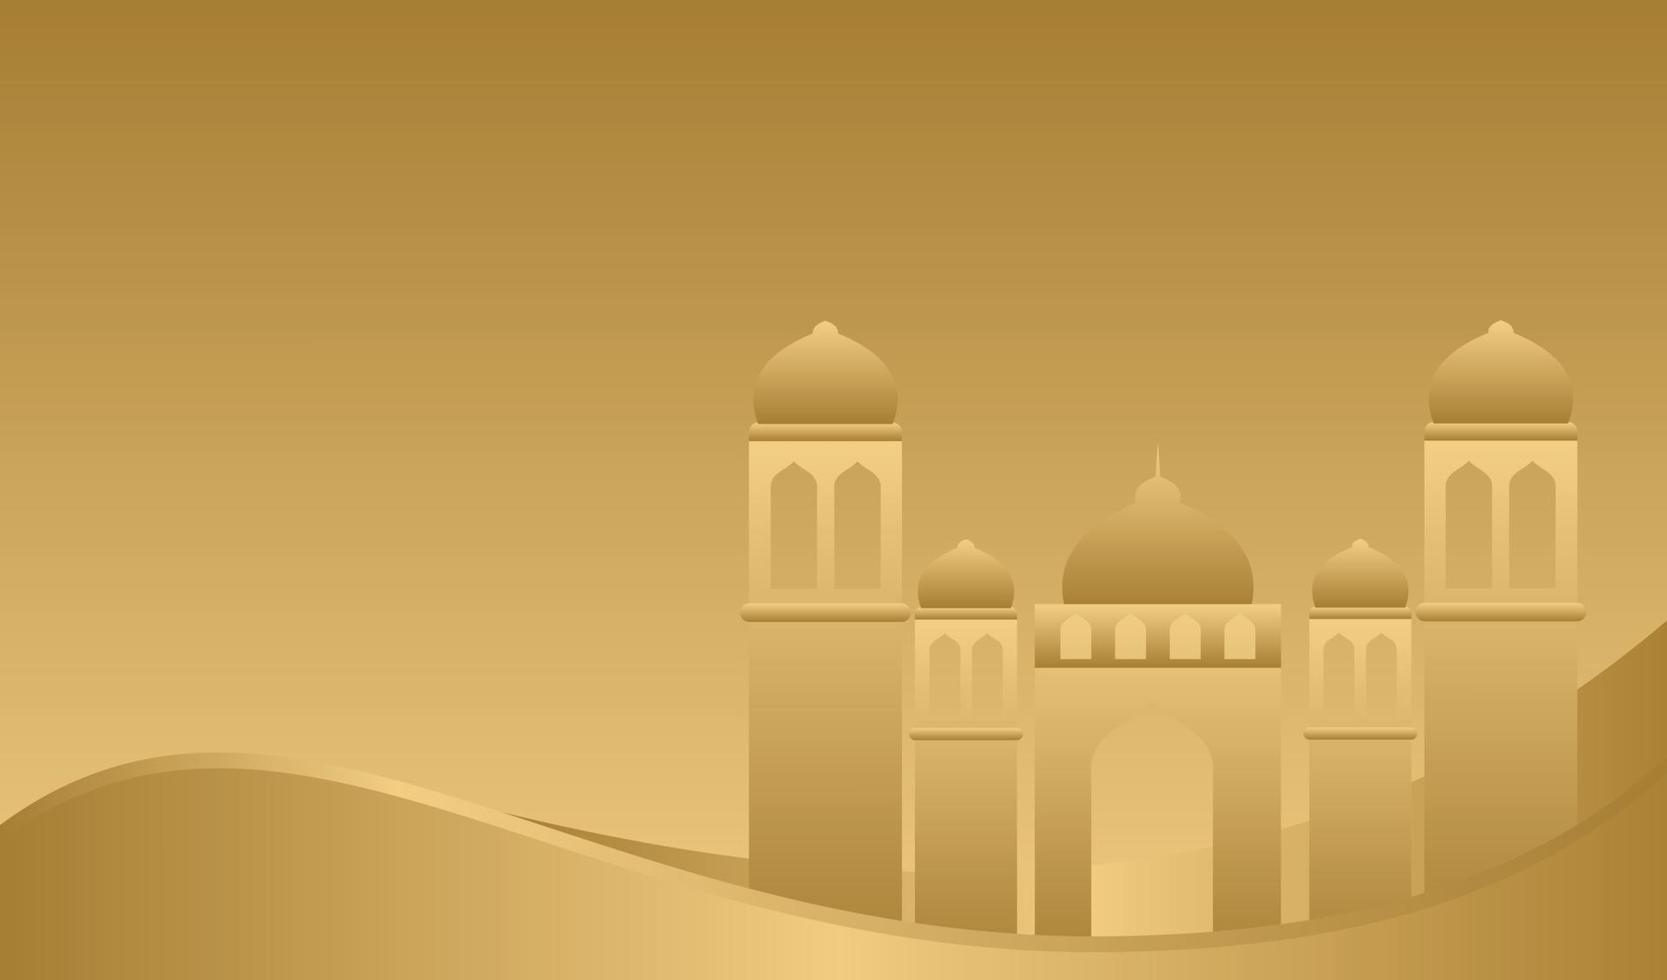 islamisk bakgrundsdesign för ramadan kareem och eid mubarak eller eid al adha vektor